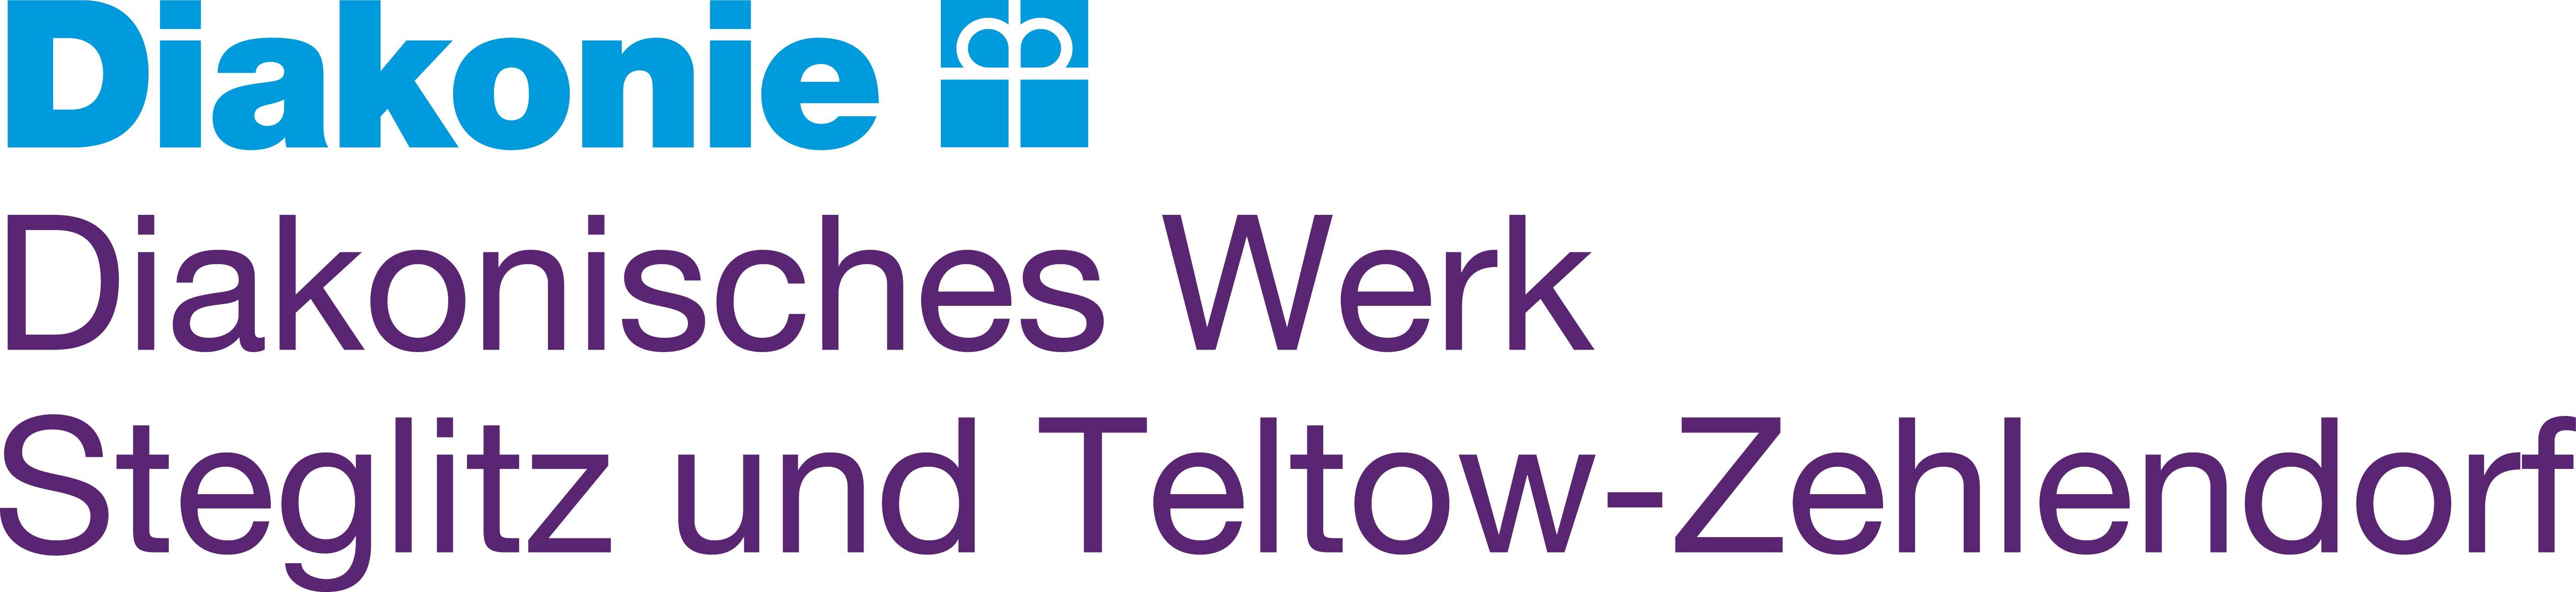 Logo: Diakonisches Werk Steglitz und Teltow-Zehlendorf e. V. (Träger)